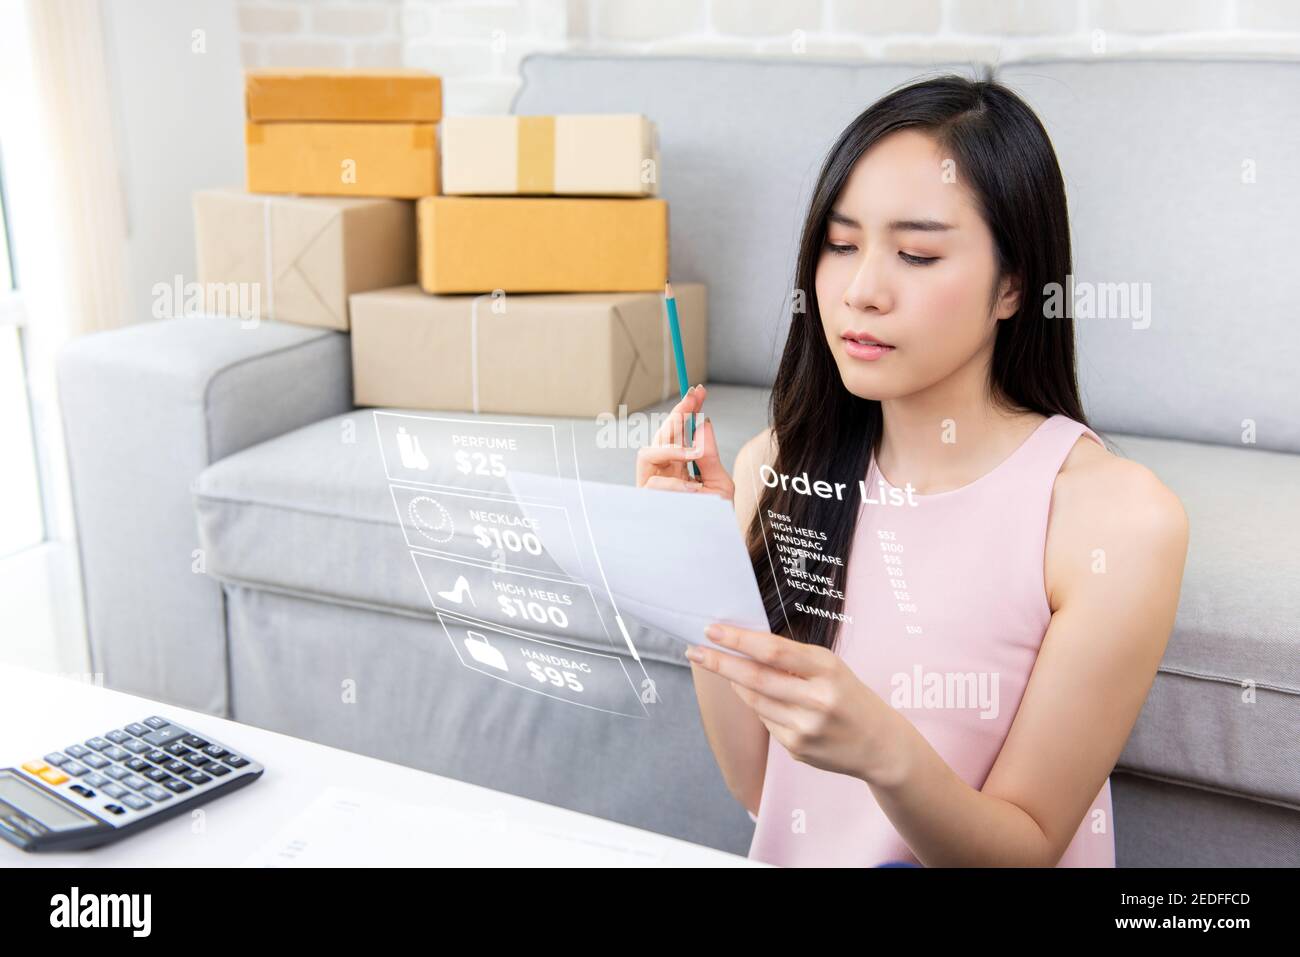 Jeune femme asiatique entrepreneur ou freelance vendeur en ligne travaillant à vérification des commandes à domicile en vue de la préparation des colis de livraison aux clients Banque D'Images